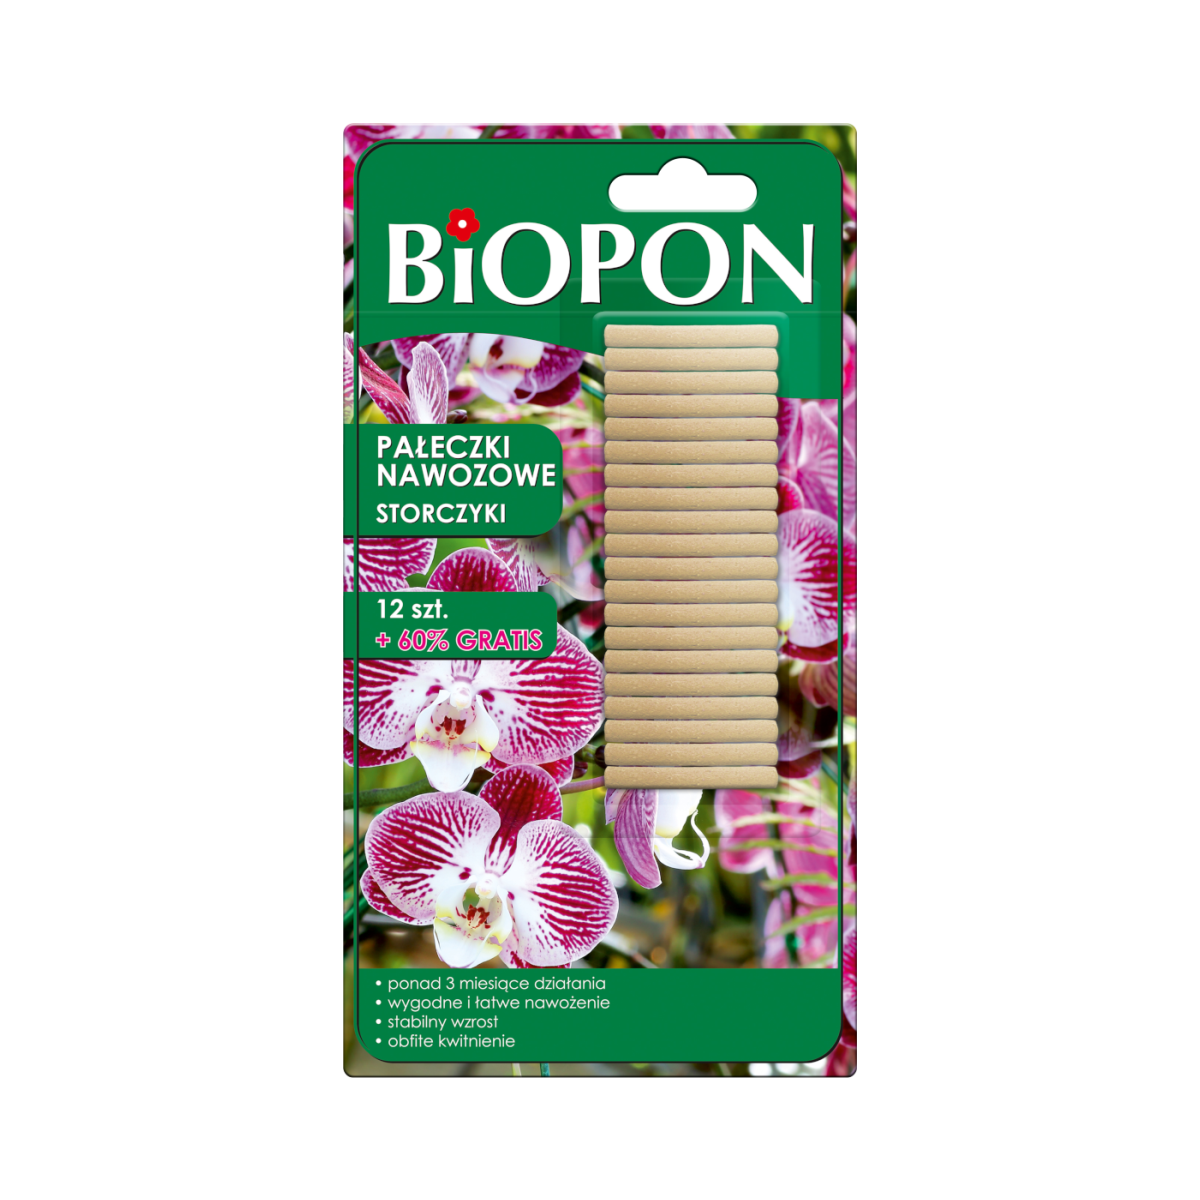 Pałeczki nawozowe do storczyków Biopon